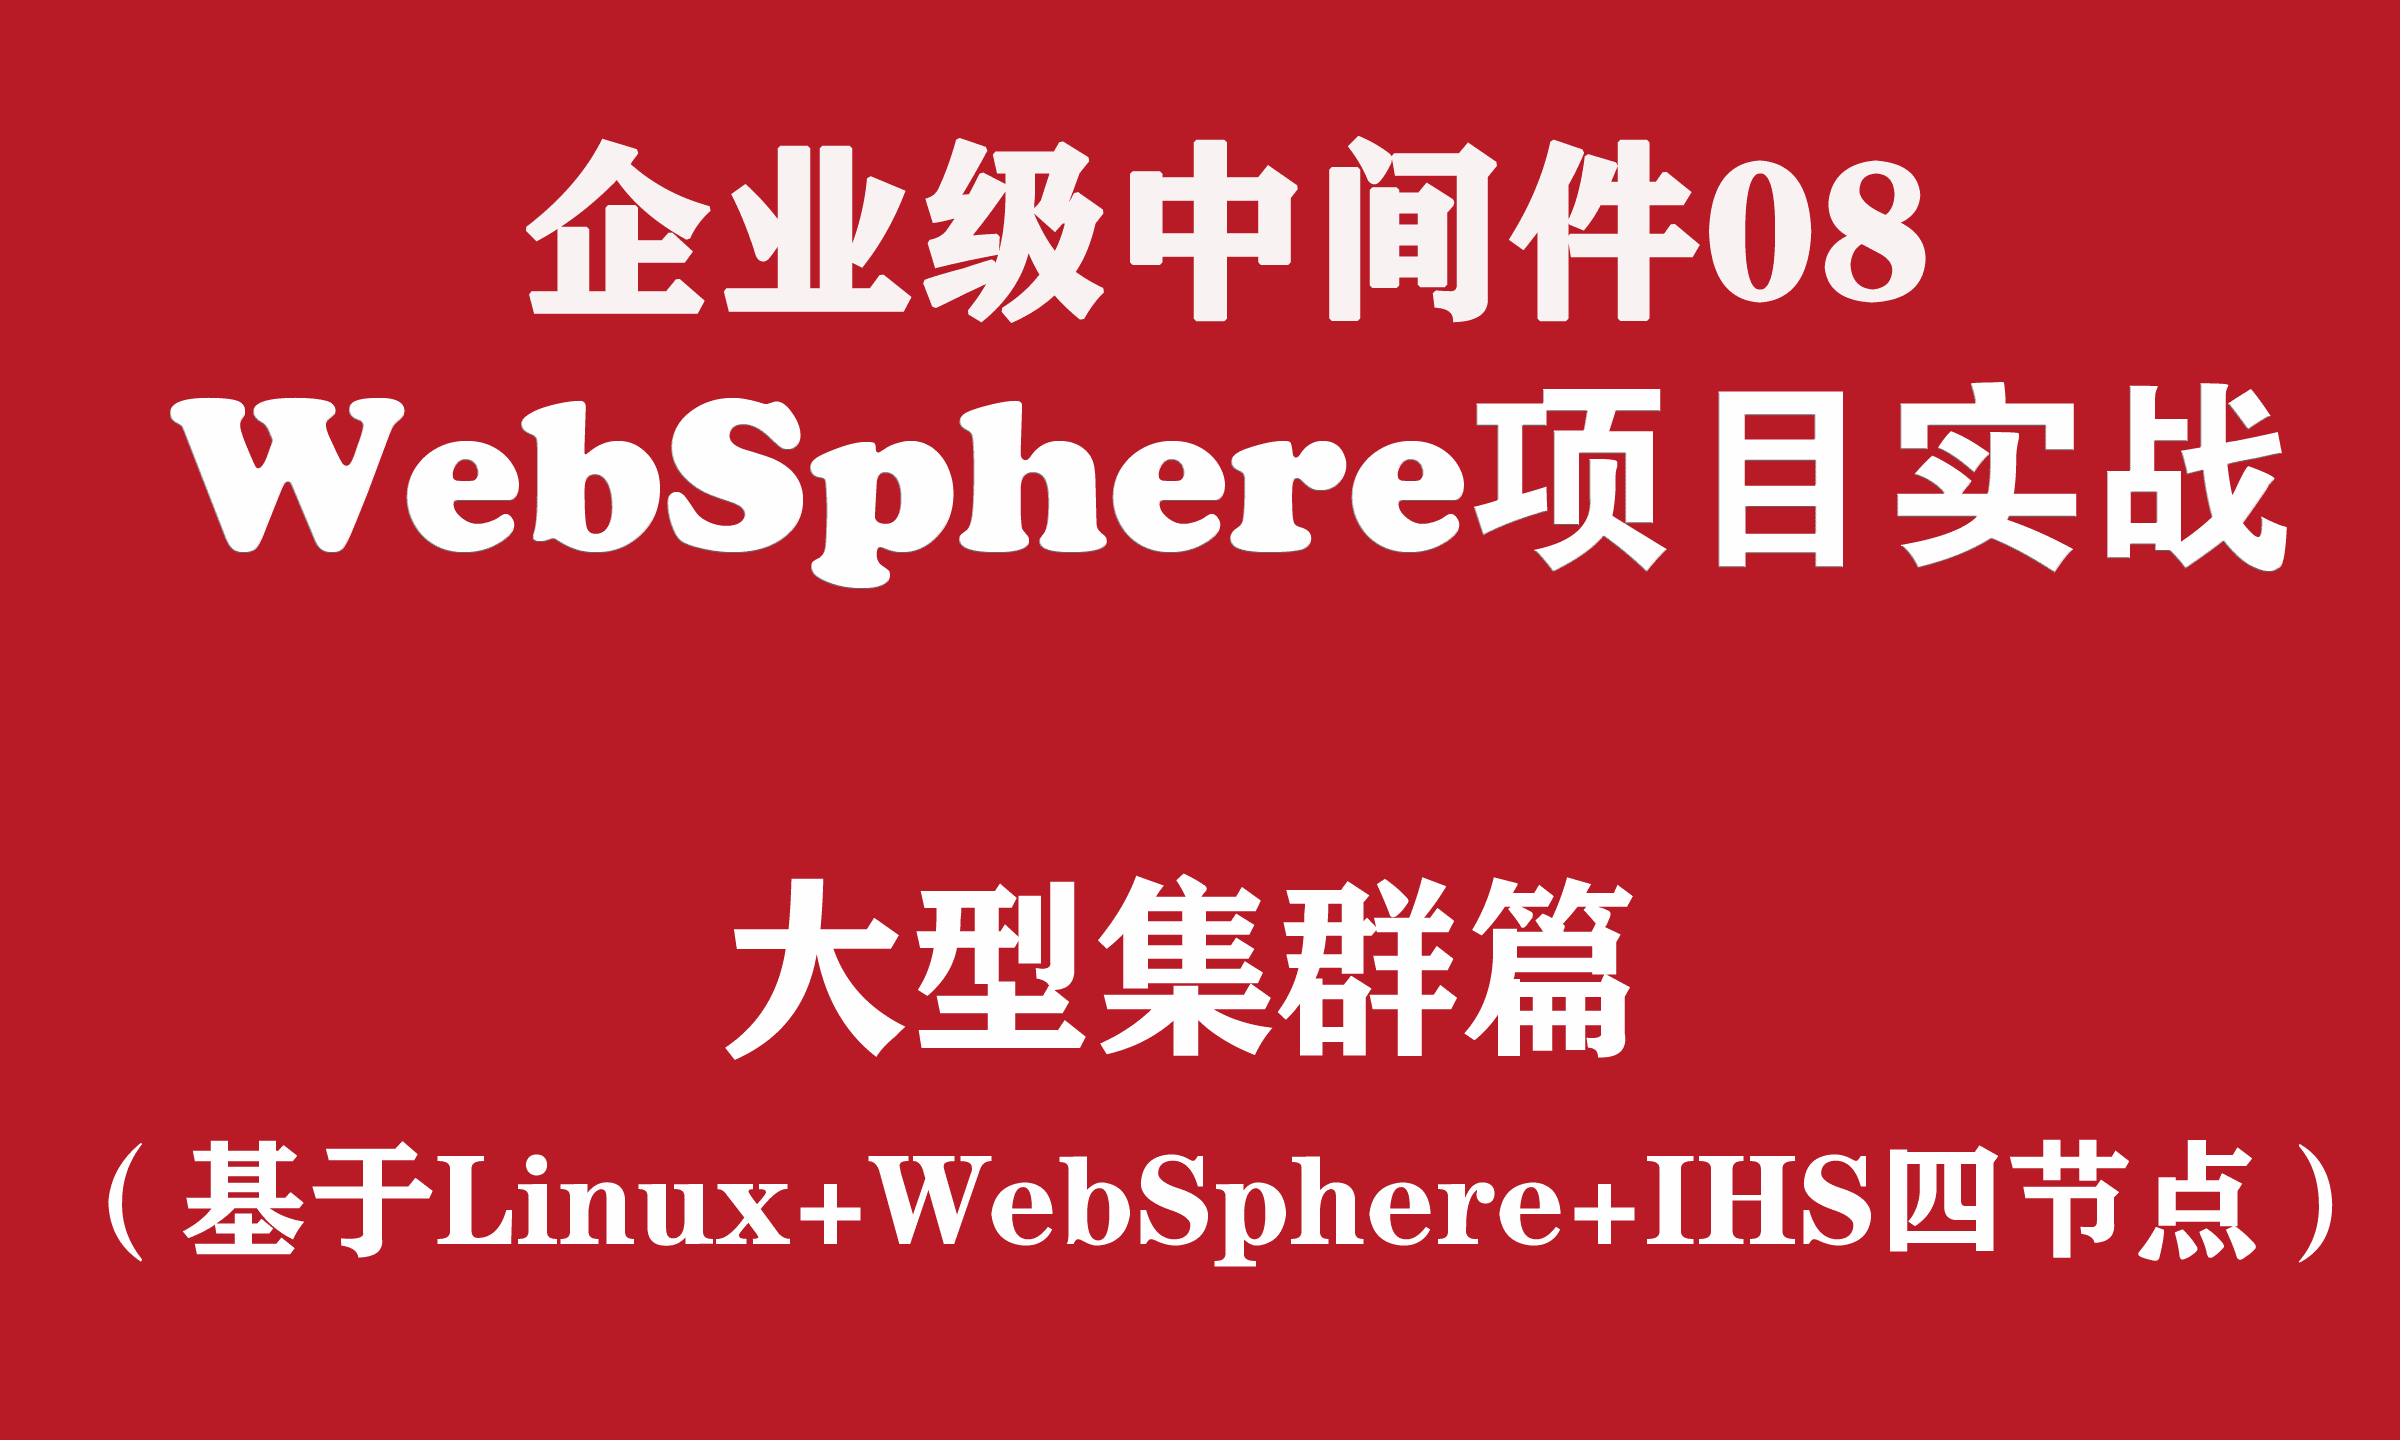 企业级WebSphere集群配置与实施_WebSphere中间件维护与管理03